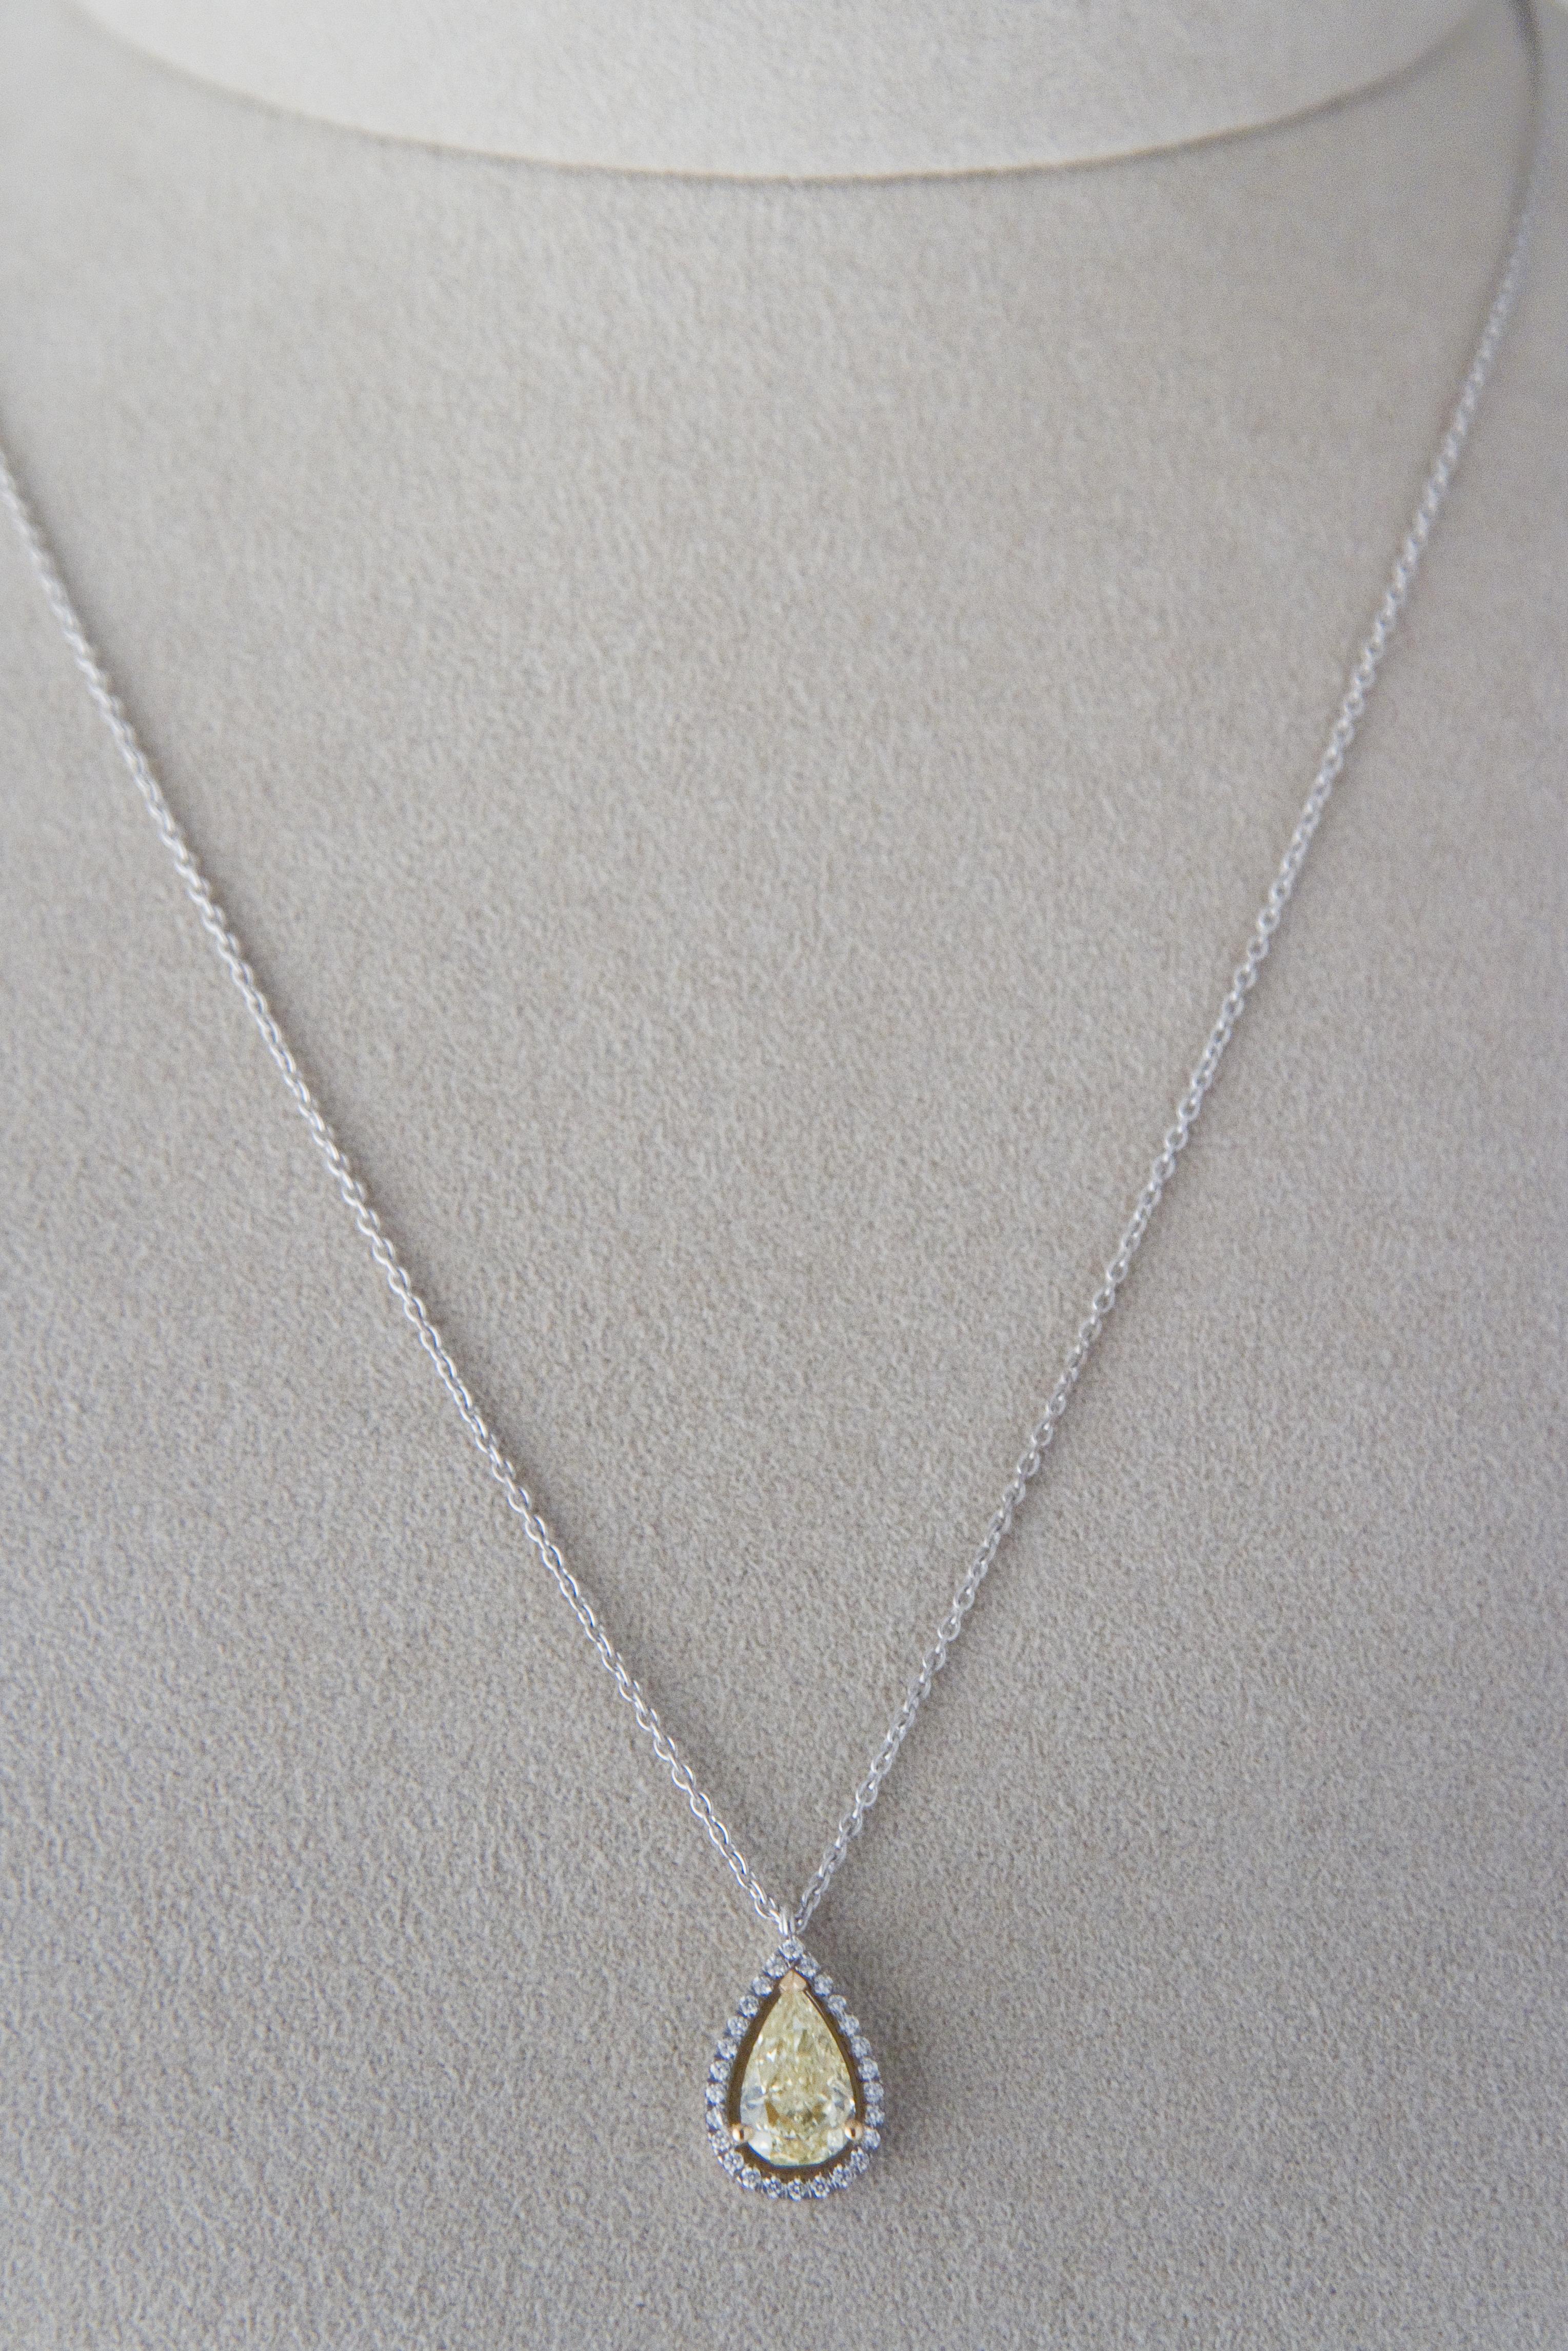 Women's Fancy Yellow Diamond 1.5 ct GIA, White Diamond , White Gold 18 K Pendant Necklace